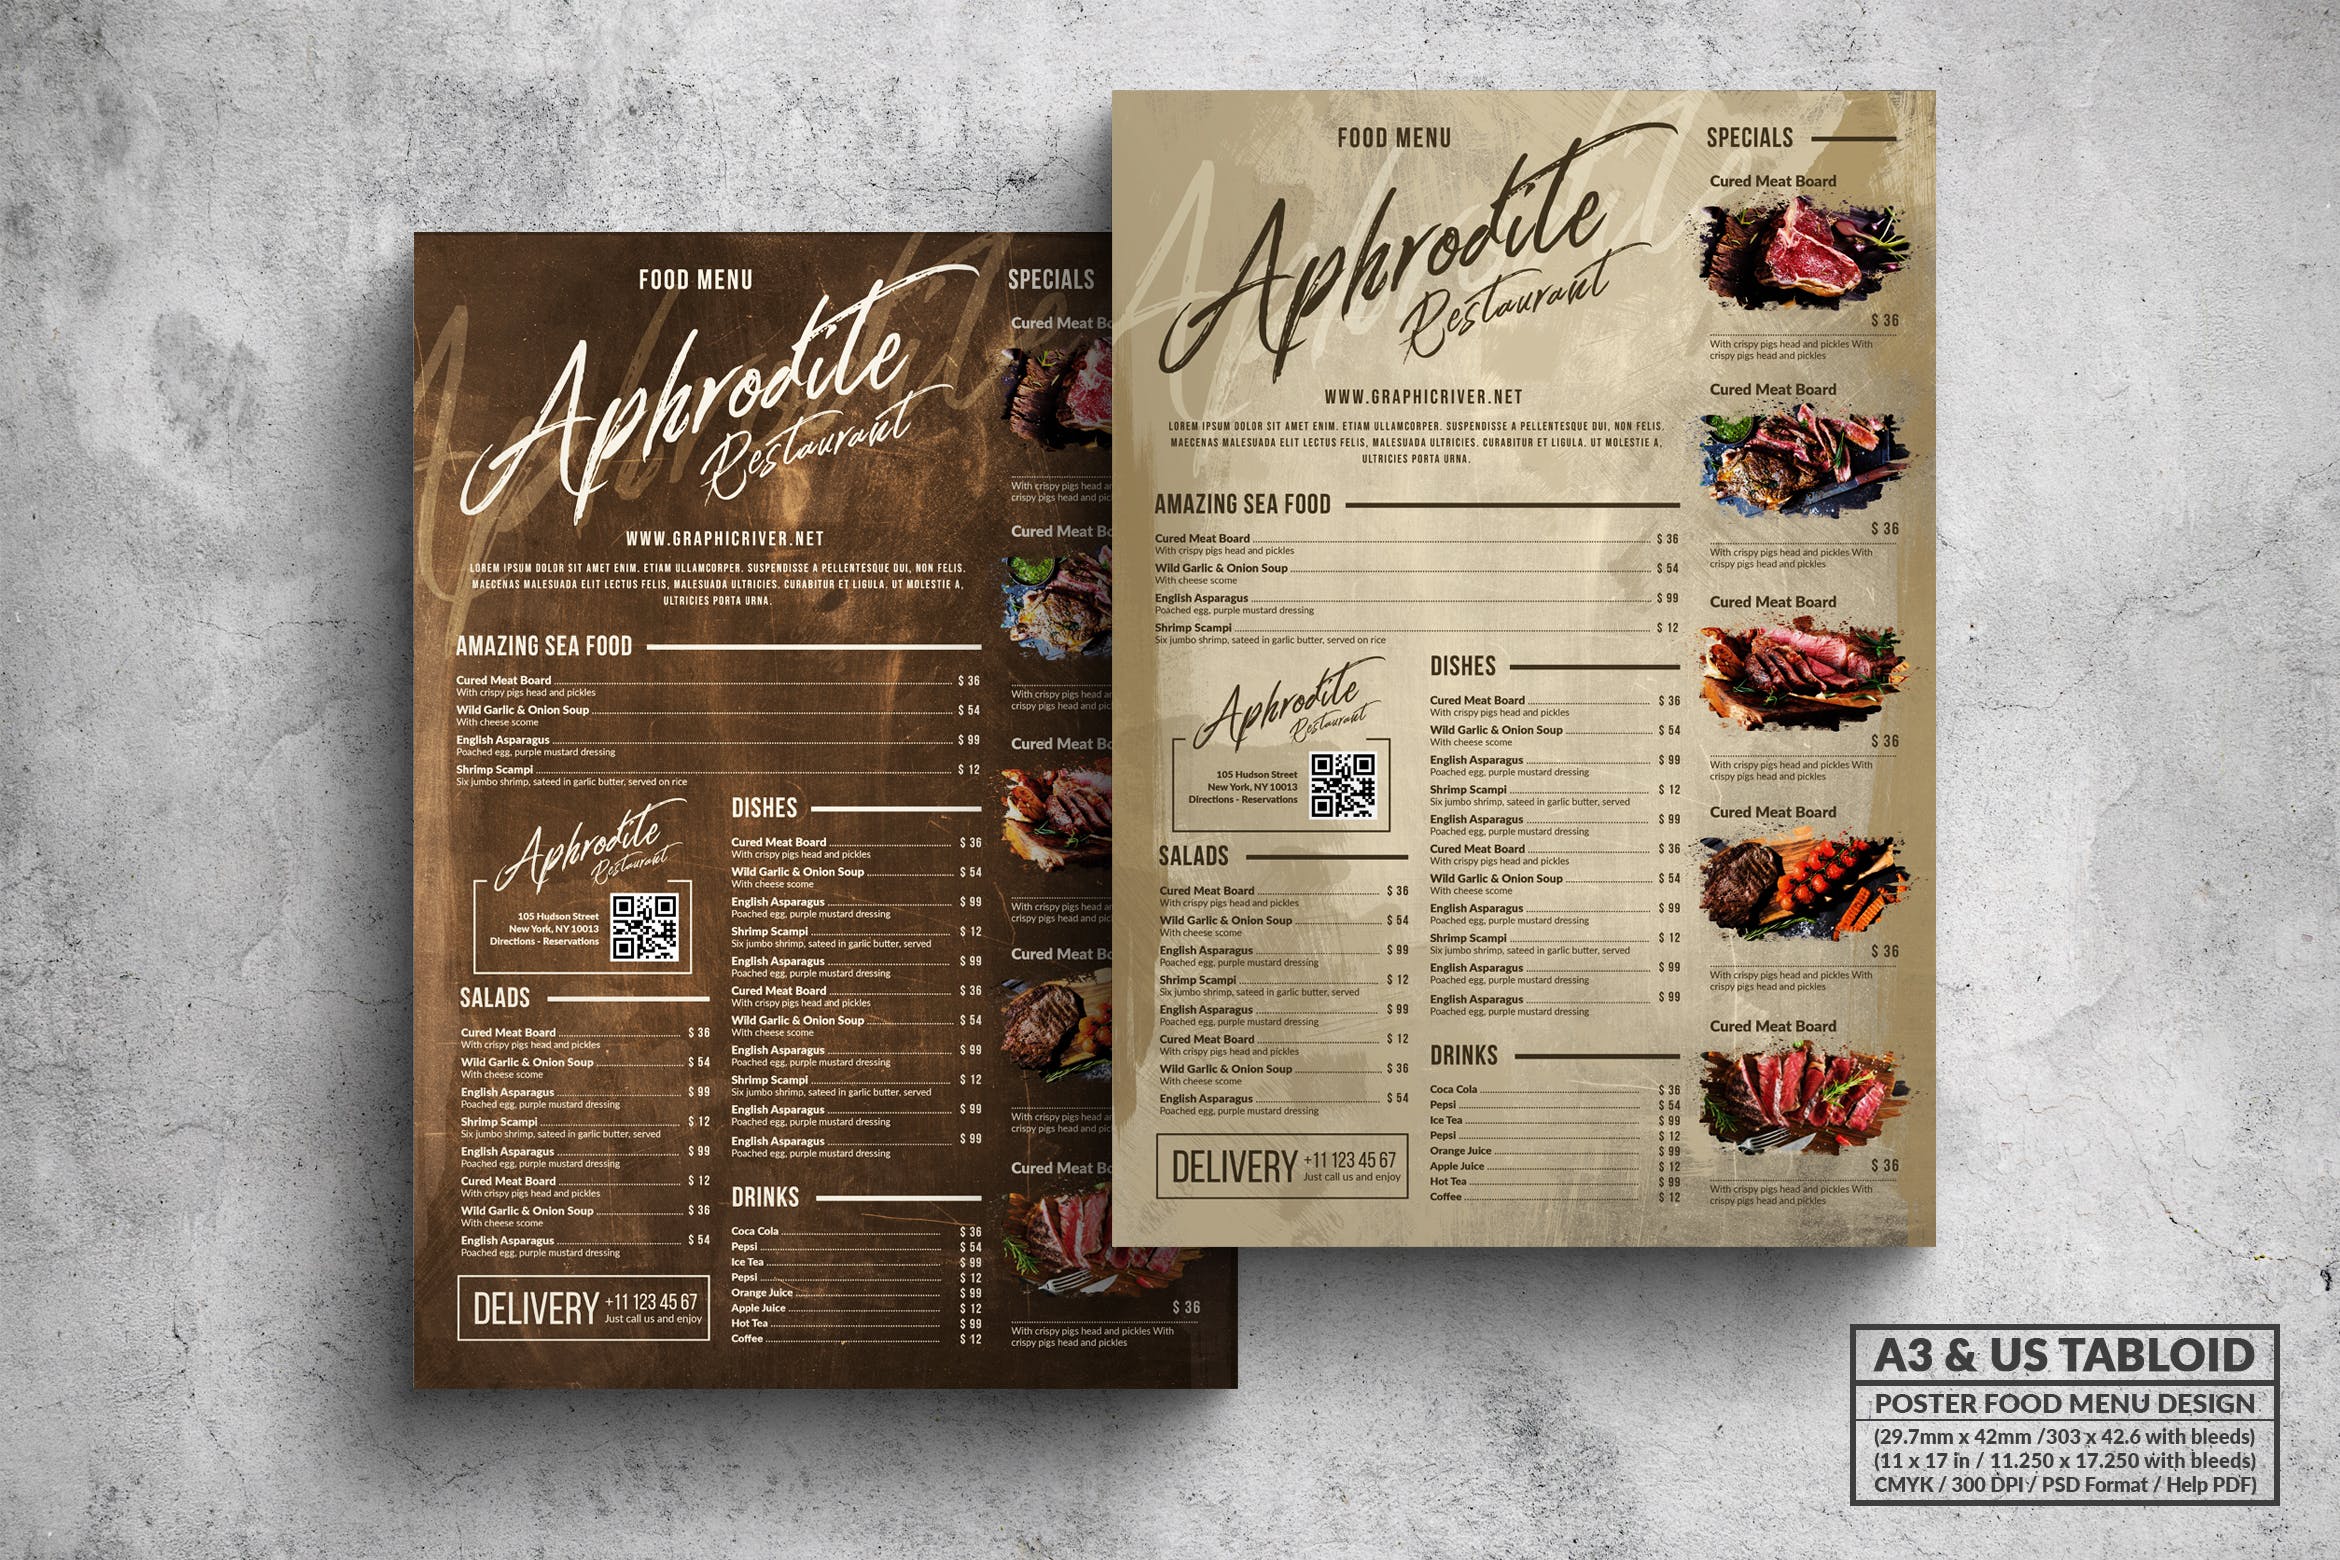 复古设计风格烤肉餐厅菜单海报模板 Vintage Old Food Menu – A3 & US Tabloid Poster插图